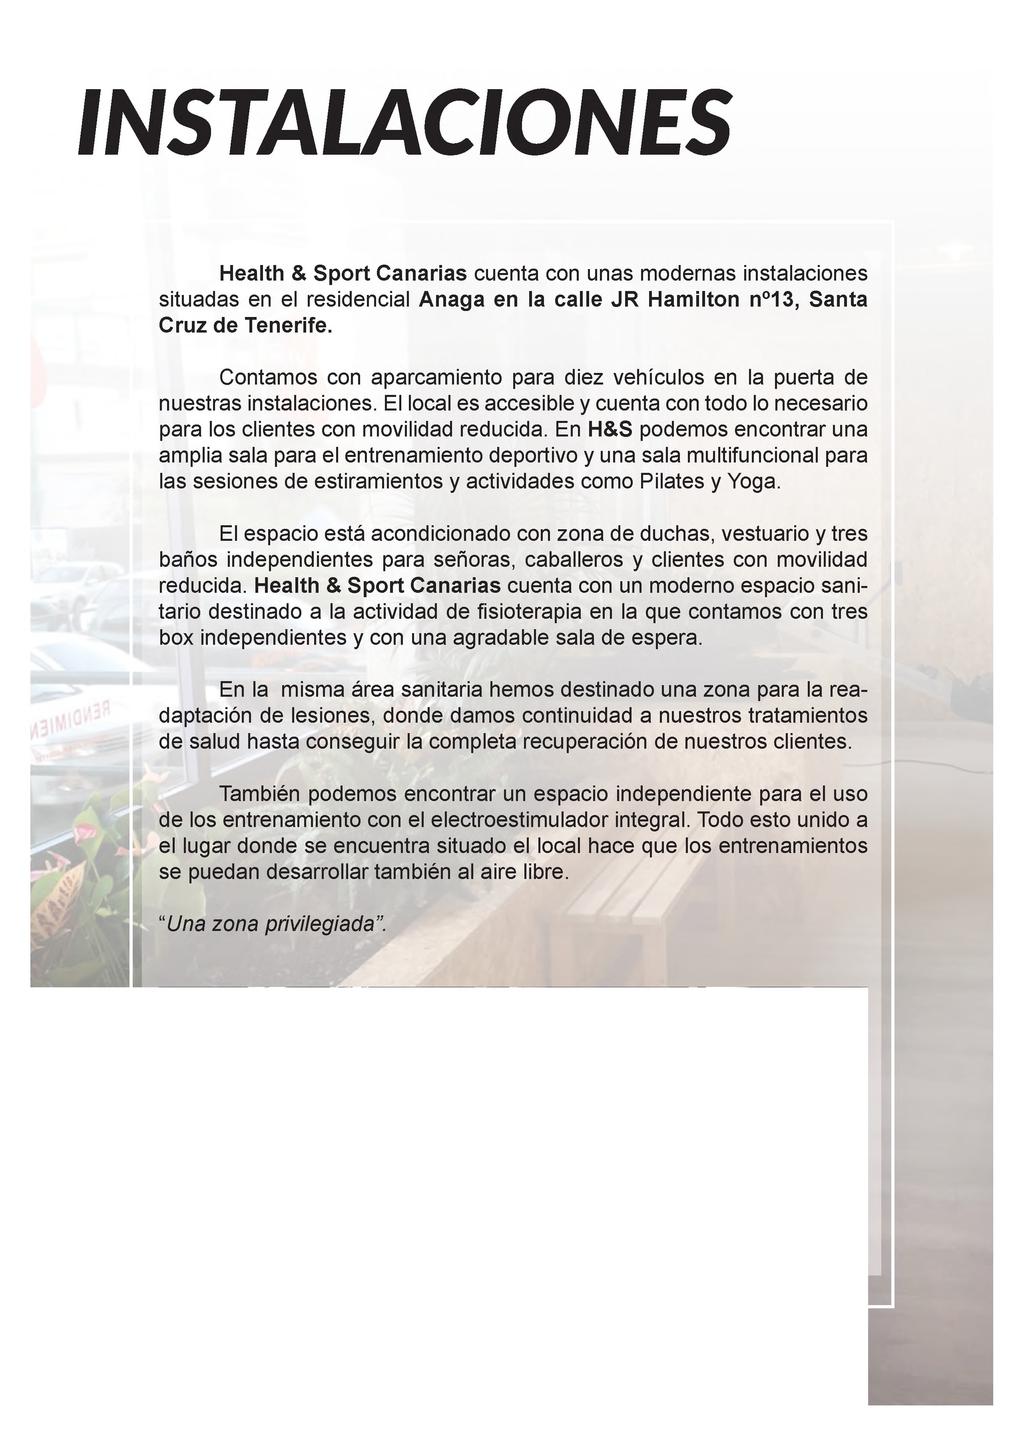 INSTALACIONES Health & Sport Canarias cuenta con unas modernas instalaciones situadas en el residencial Anaga en la calle JR Hamilton n 13, Santa Cruz de Tenerife.